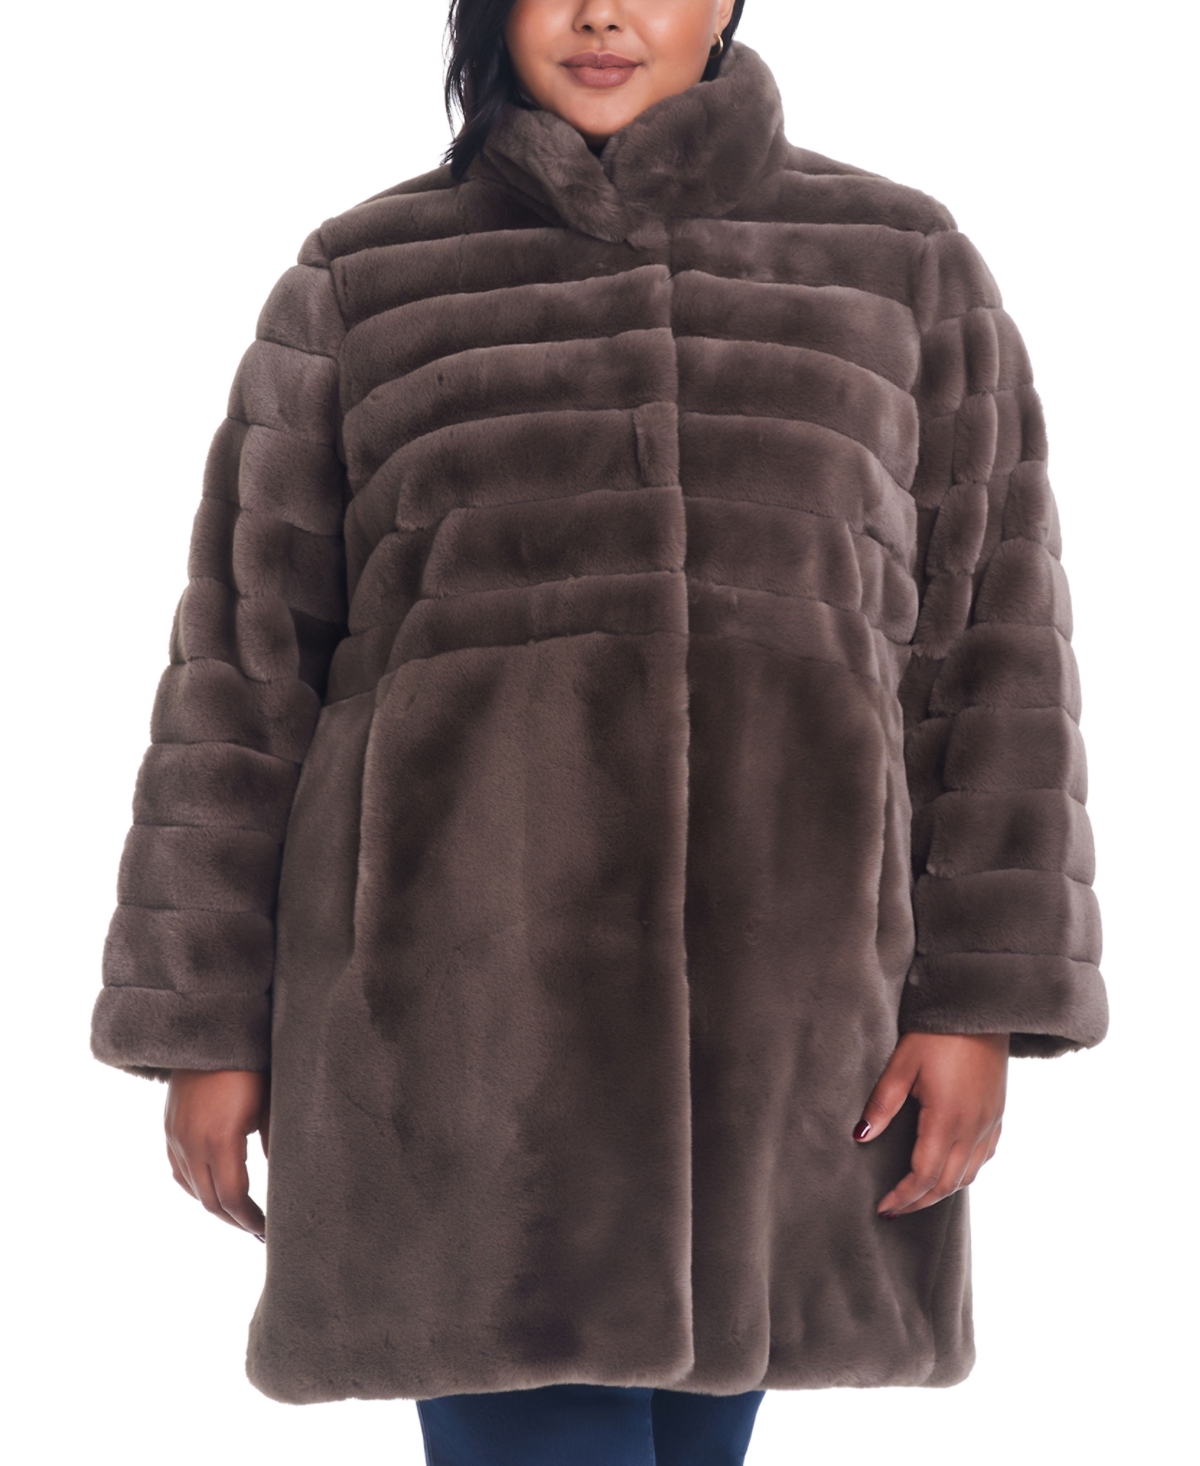 Women's Plus Size Faux-Fur Coat - Taupe